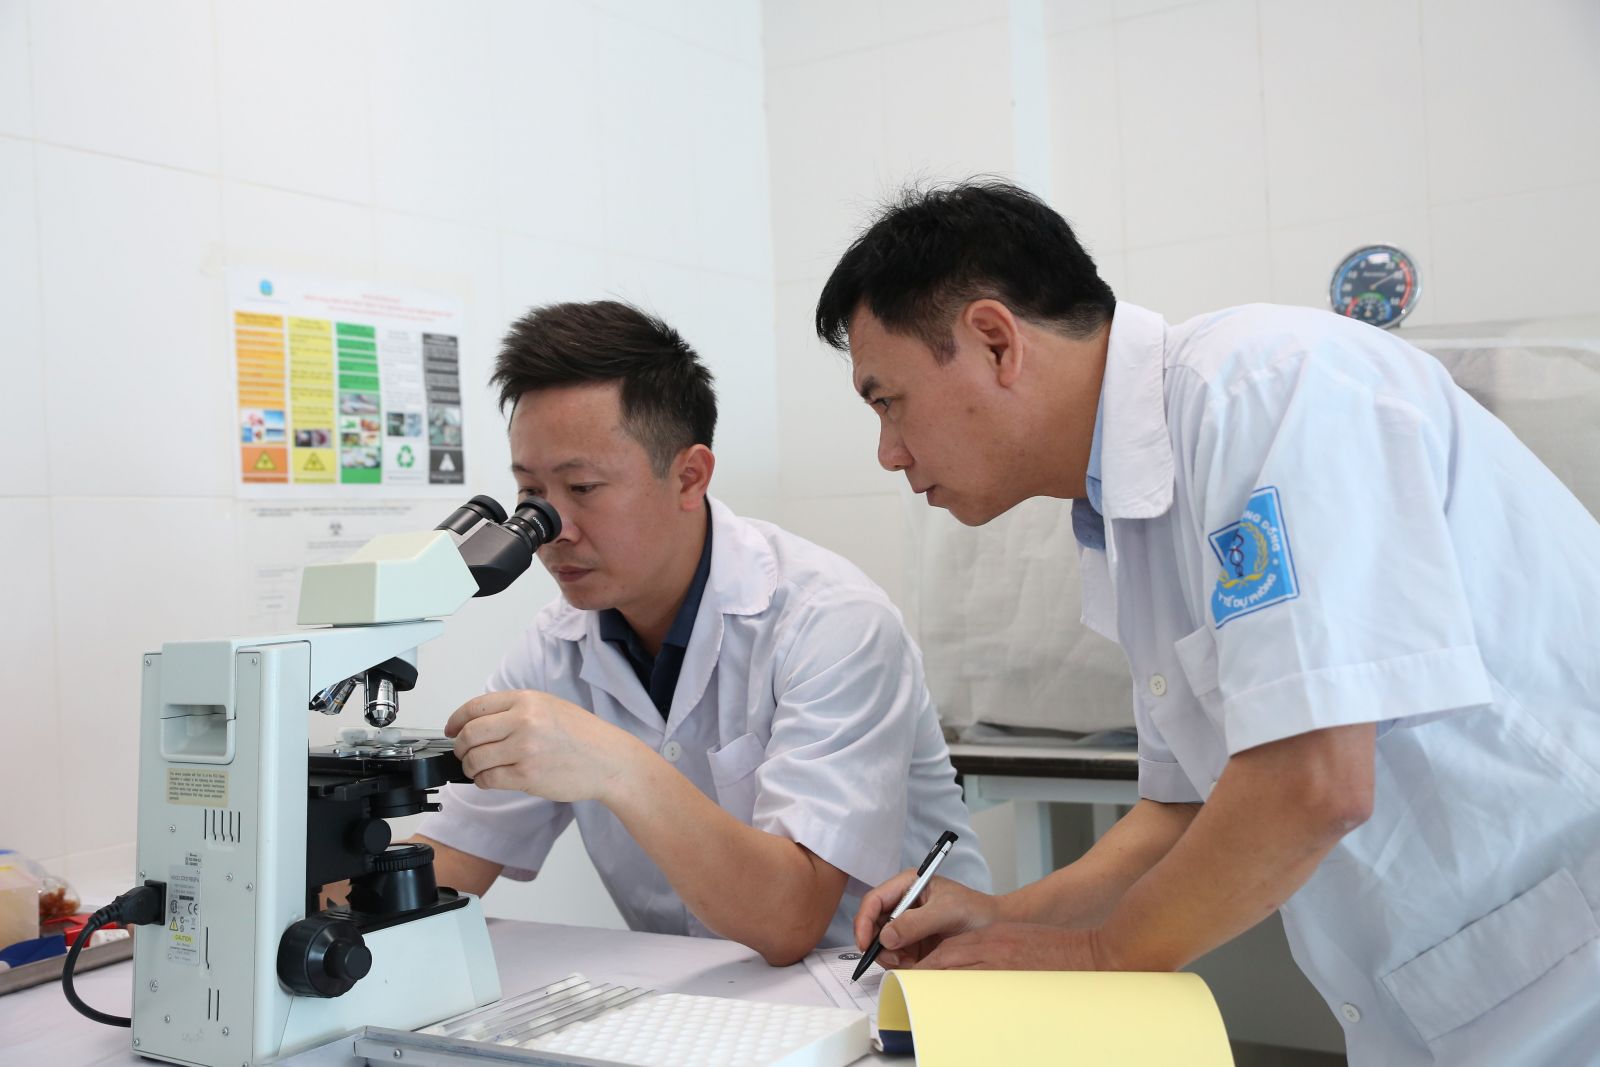 Hơn 120 người trong một thôn ở Hà Tĩnh bị viêm da tiếp xúc do bọ chét